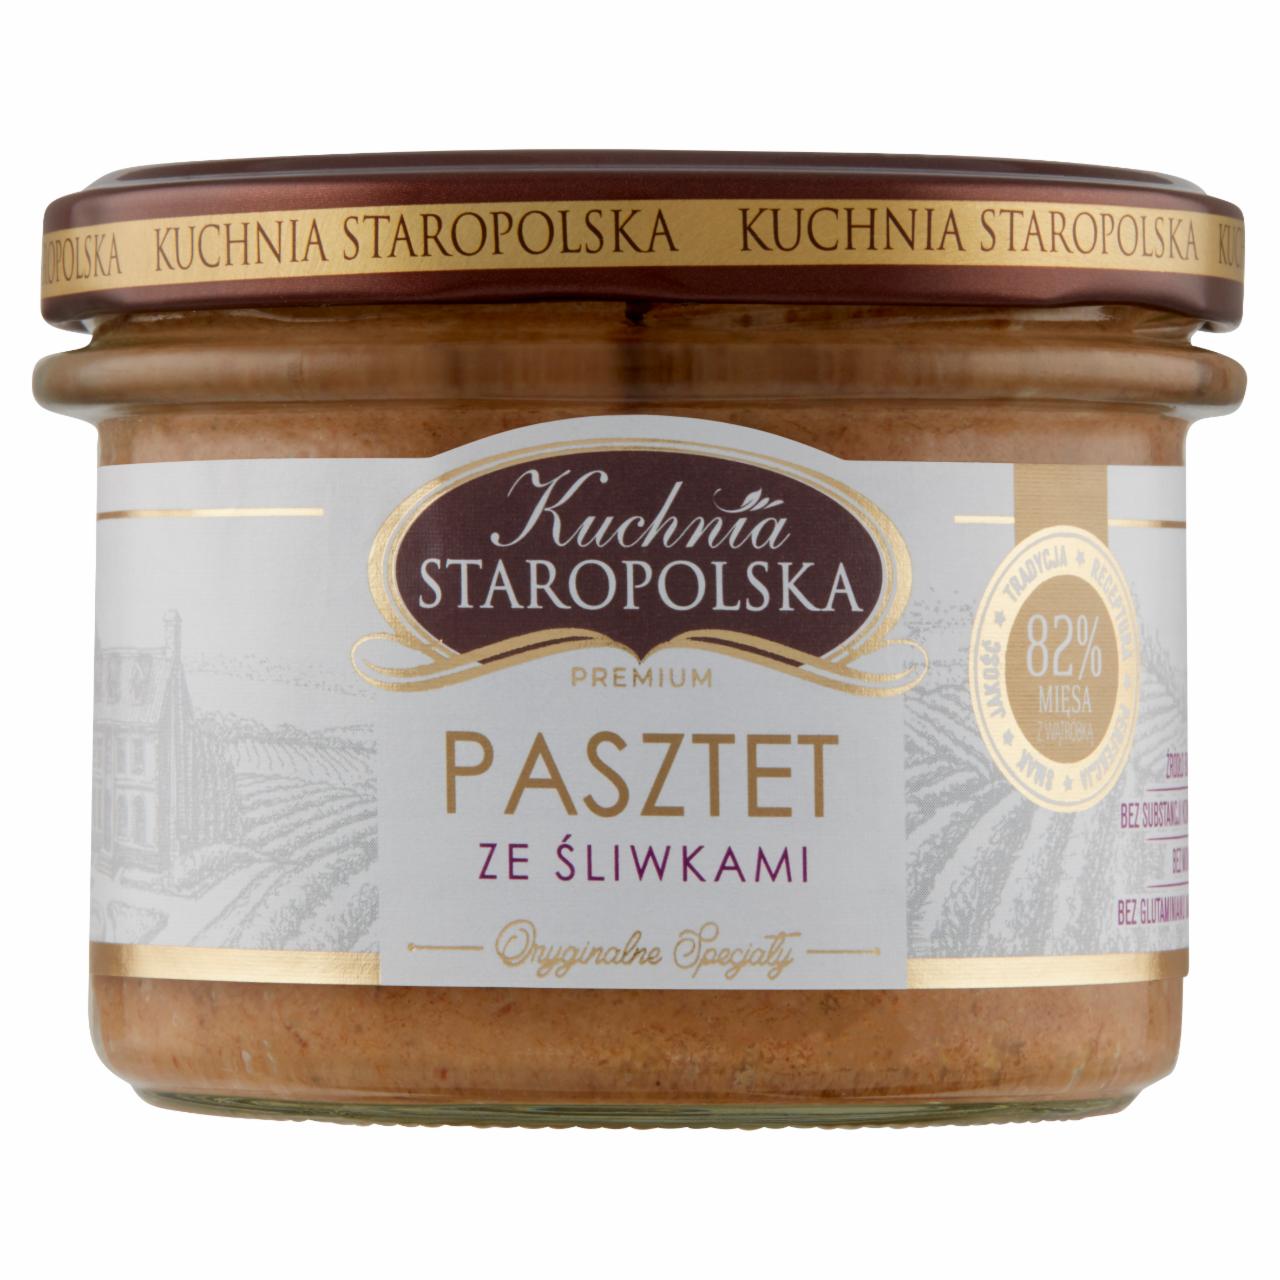 Zdjęcia - Kuchnia Staropolska Premium Pasztet ze śliwkami 160 g